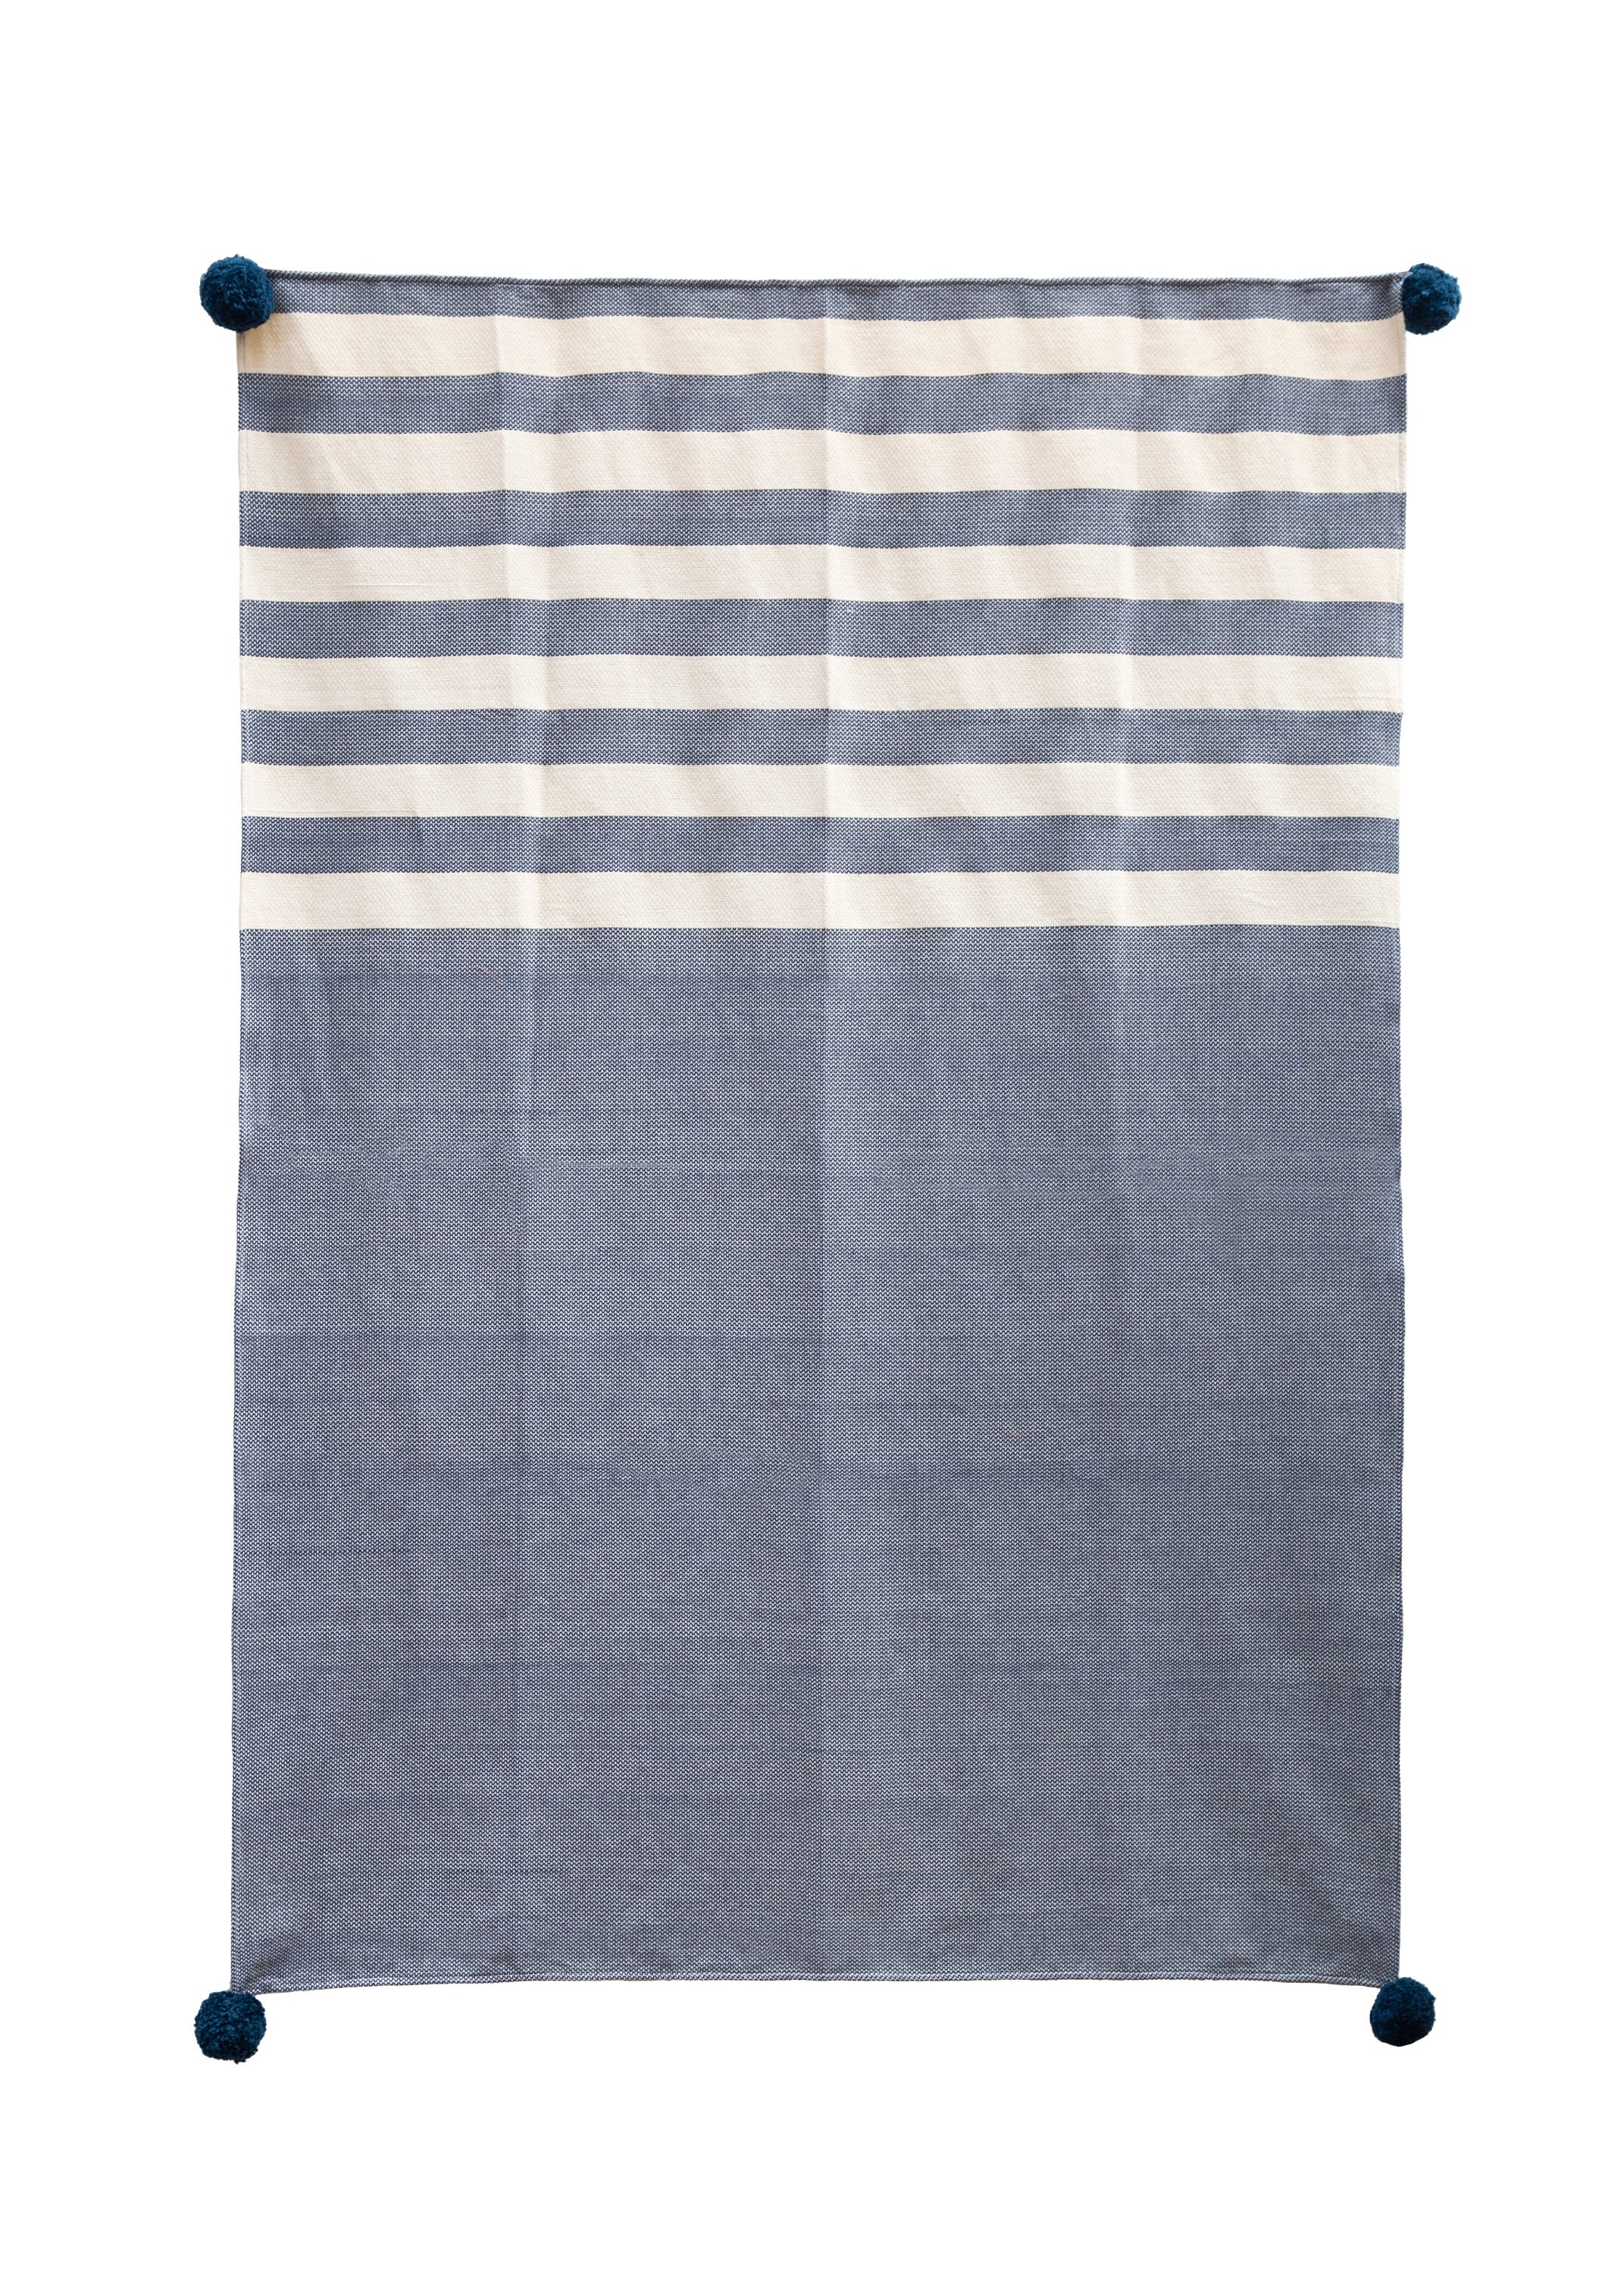 Cotton Blue w White Stripe Throw Sofa Bed Throw Rug Blanket 130x170cm 